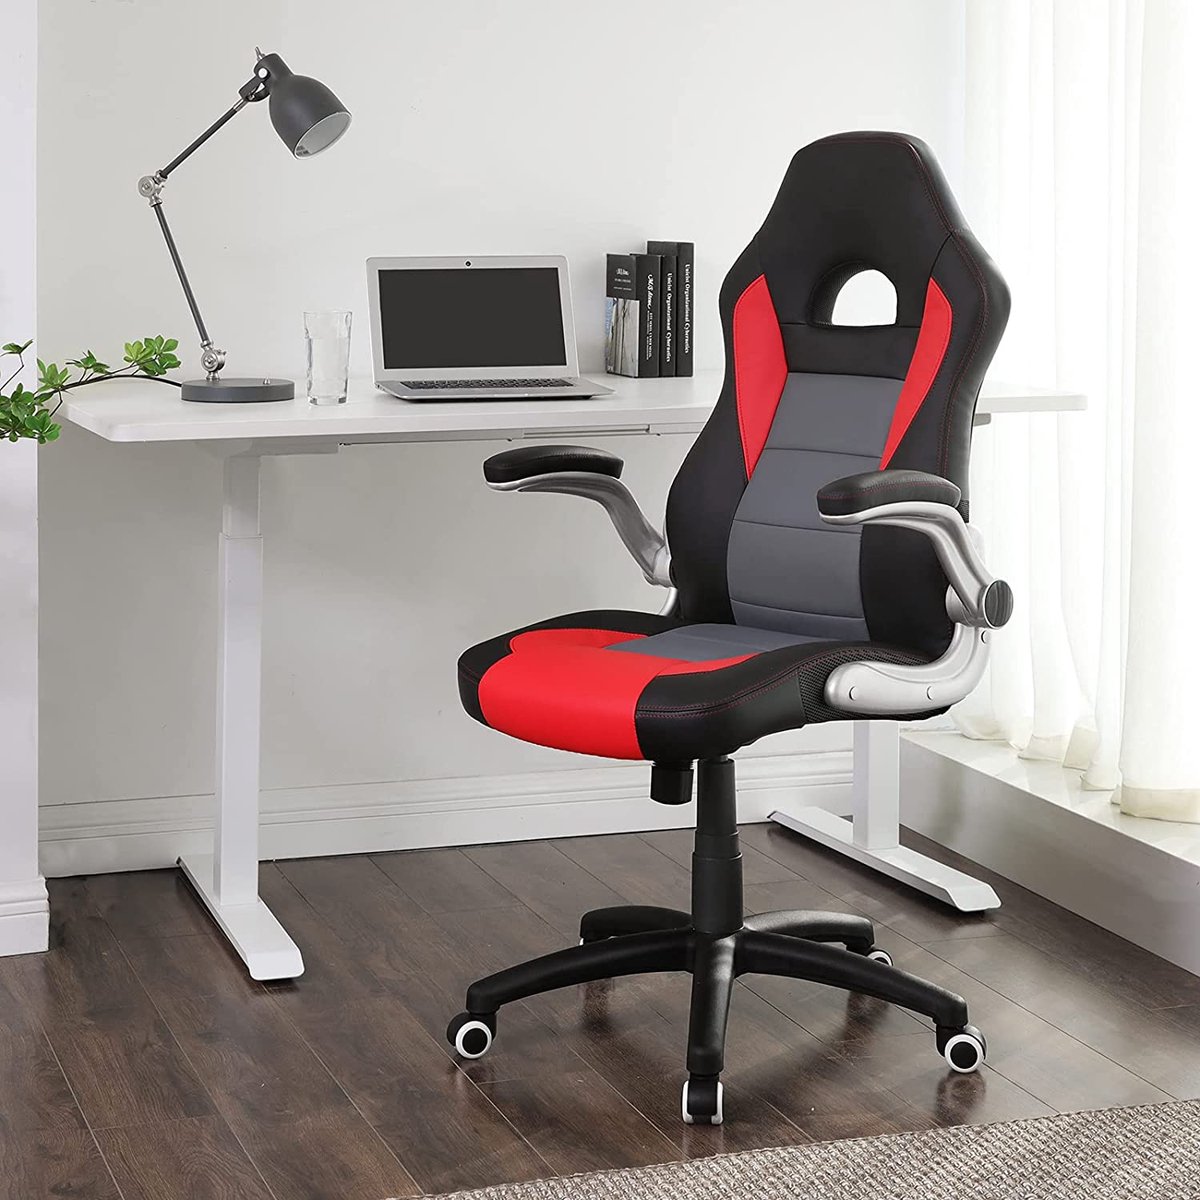 MEUBELEXPERT gamestoel, racestoel, bureaustoel met hoge rugleuning, bureaustoel, in hoogte verstelbaar, opklapbare armleuningen, wipfunctie, voor gamers, zwart-grijs-rood